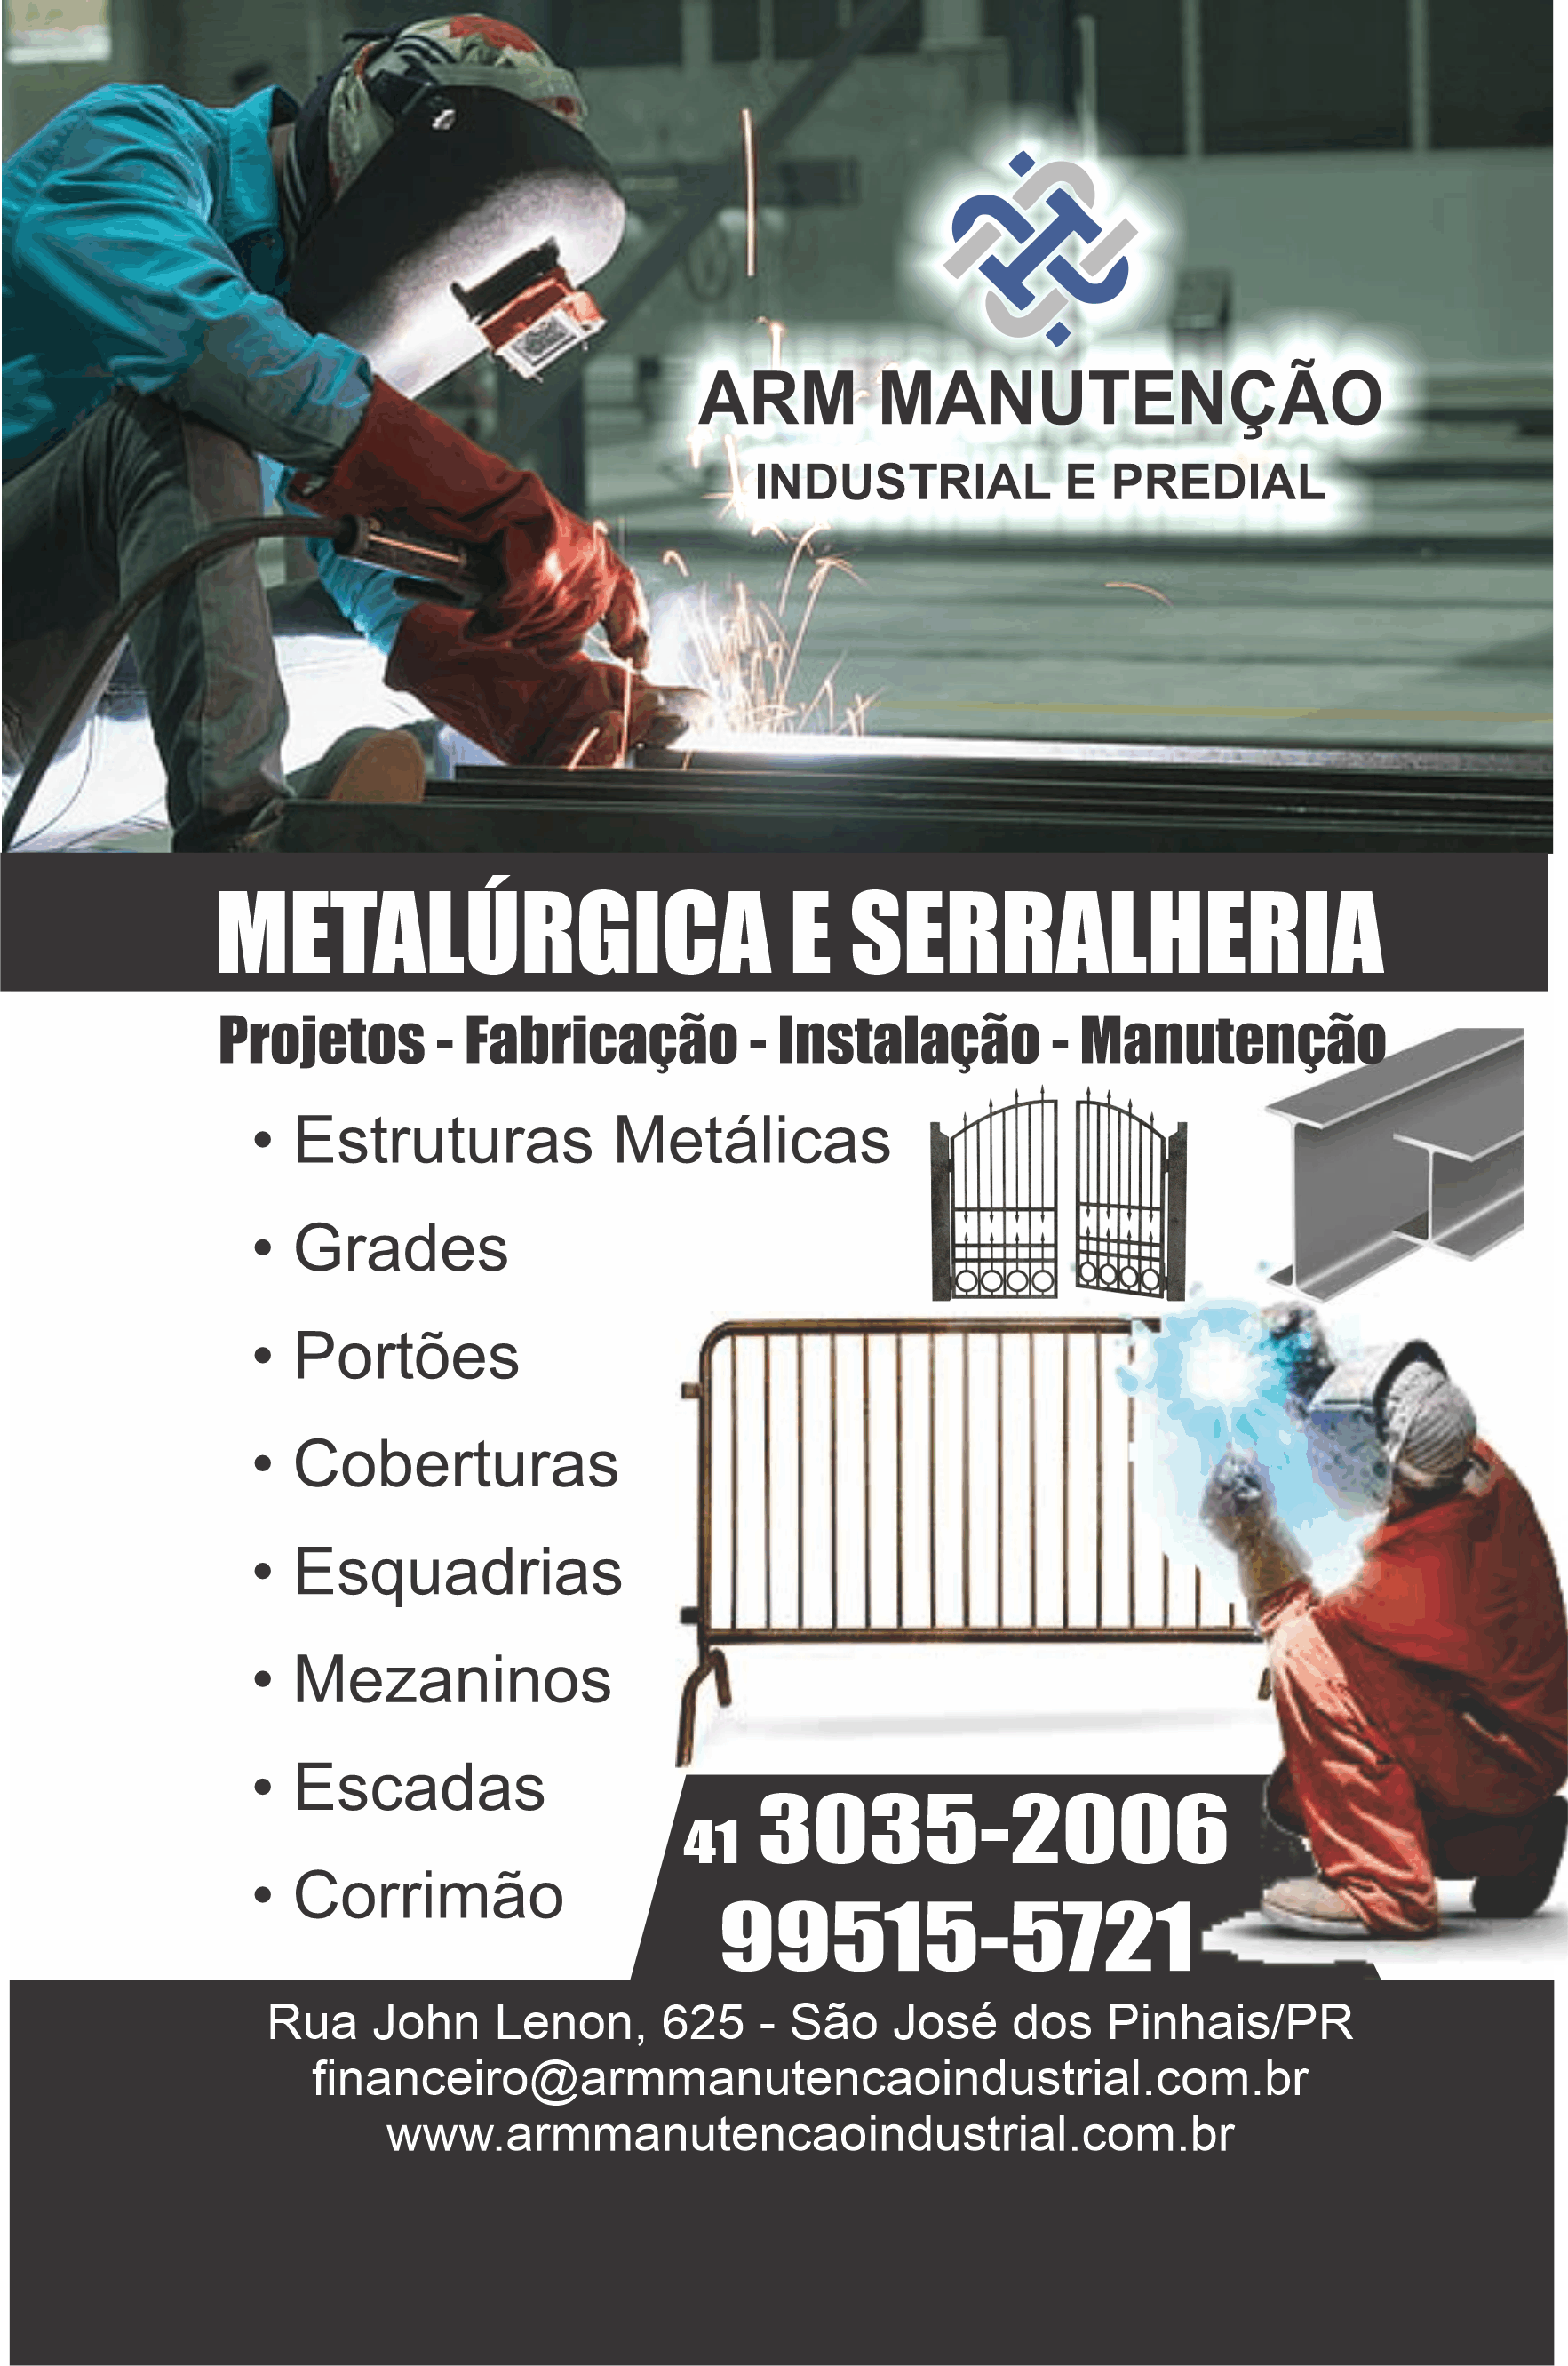 ARM Manutenção Metalurgica e Serralheria      RUA JOHN LENNON, 625, SÃO JOSÉ DOS PINHAIS - PR  Fones: (41)3035-2006 / (41) 99515-5721